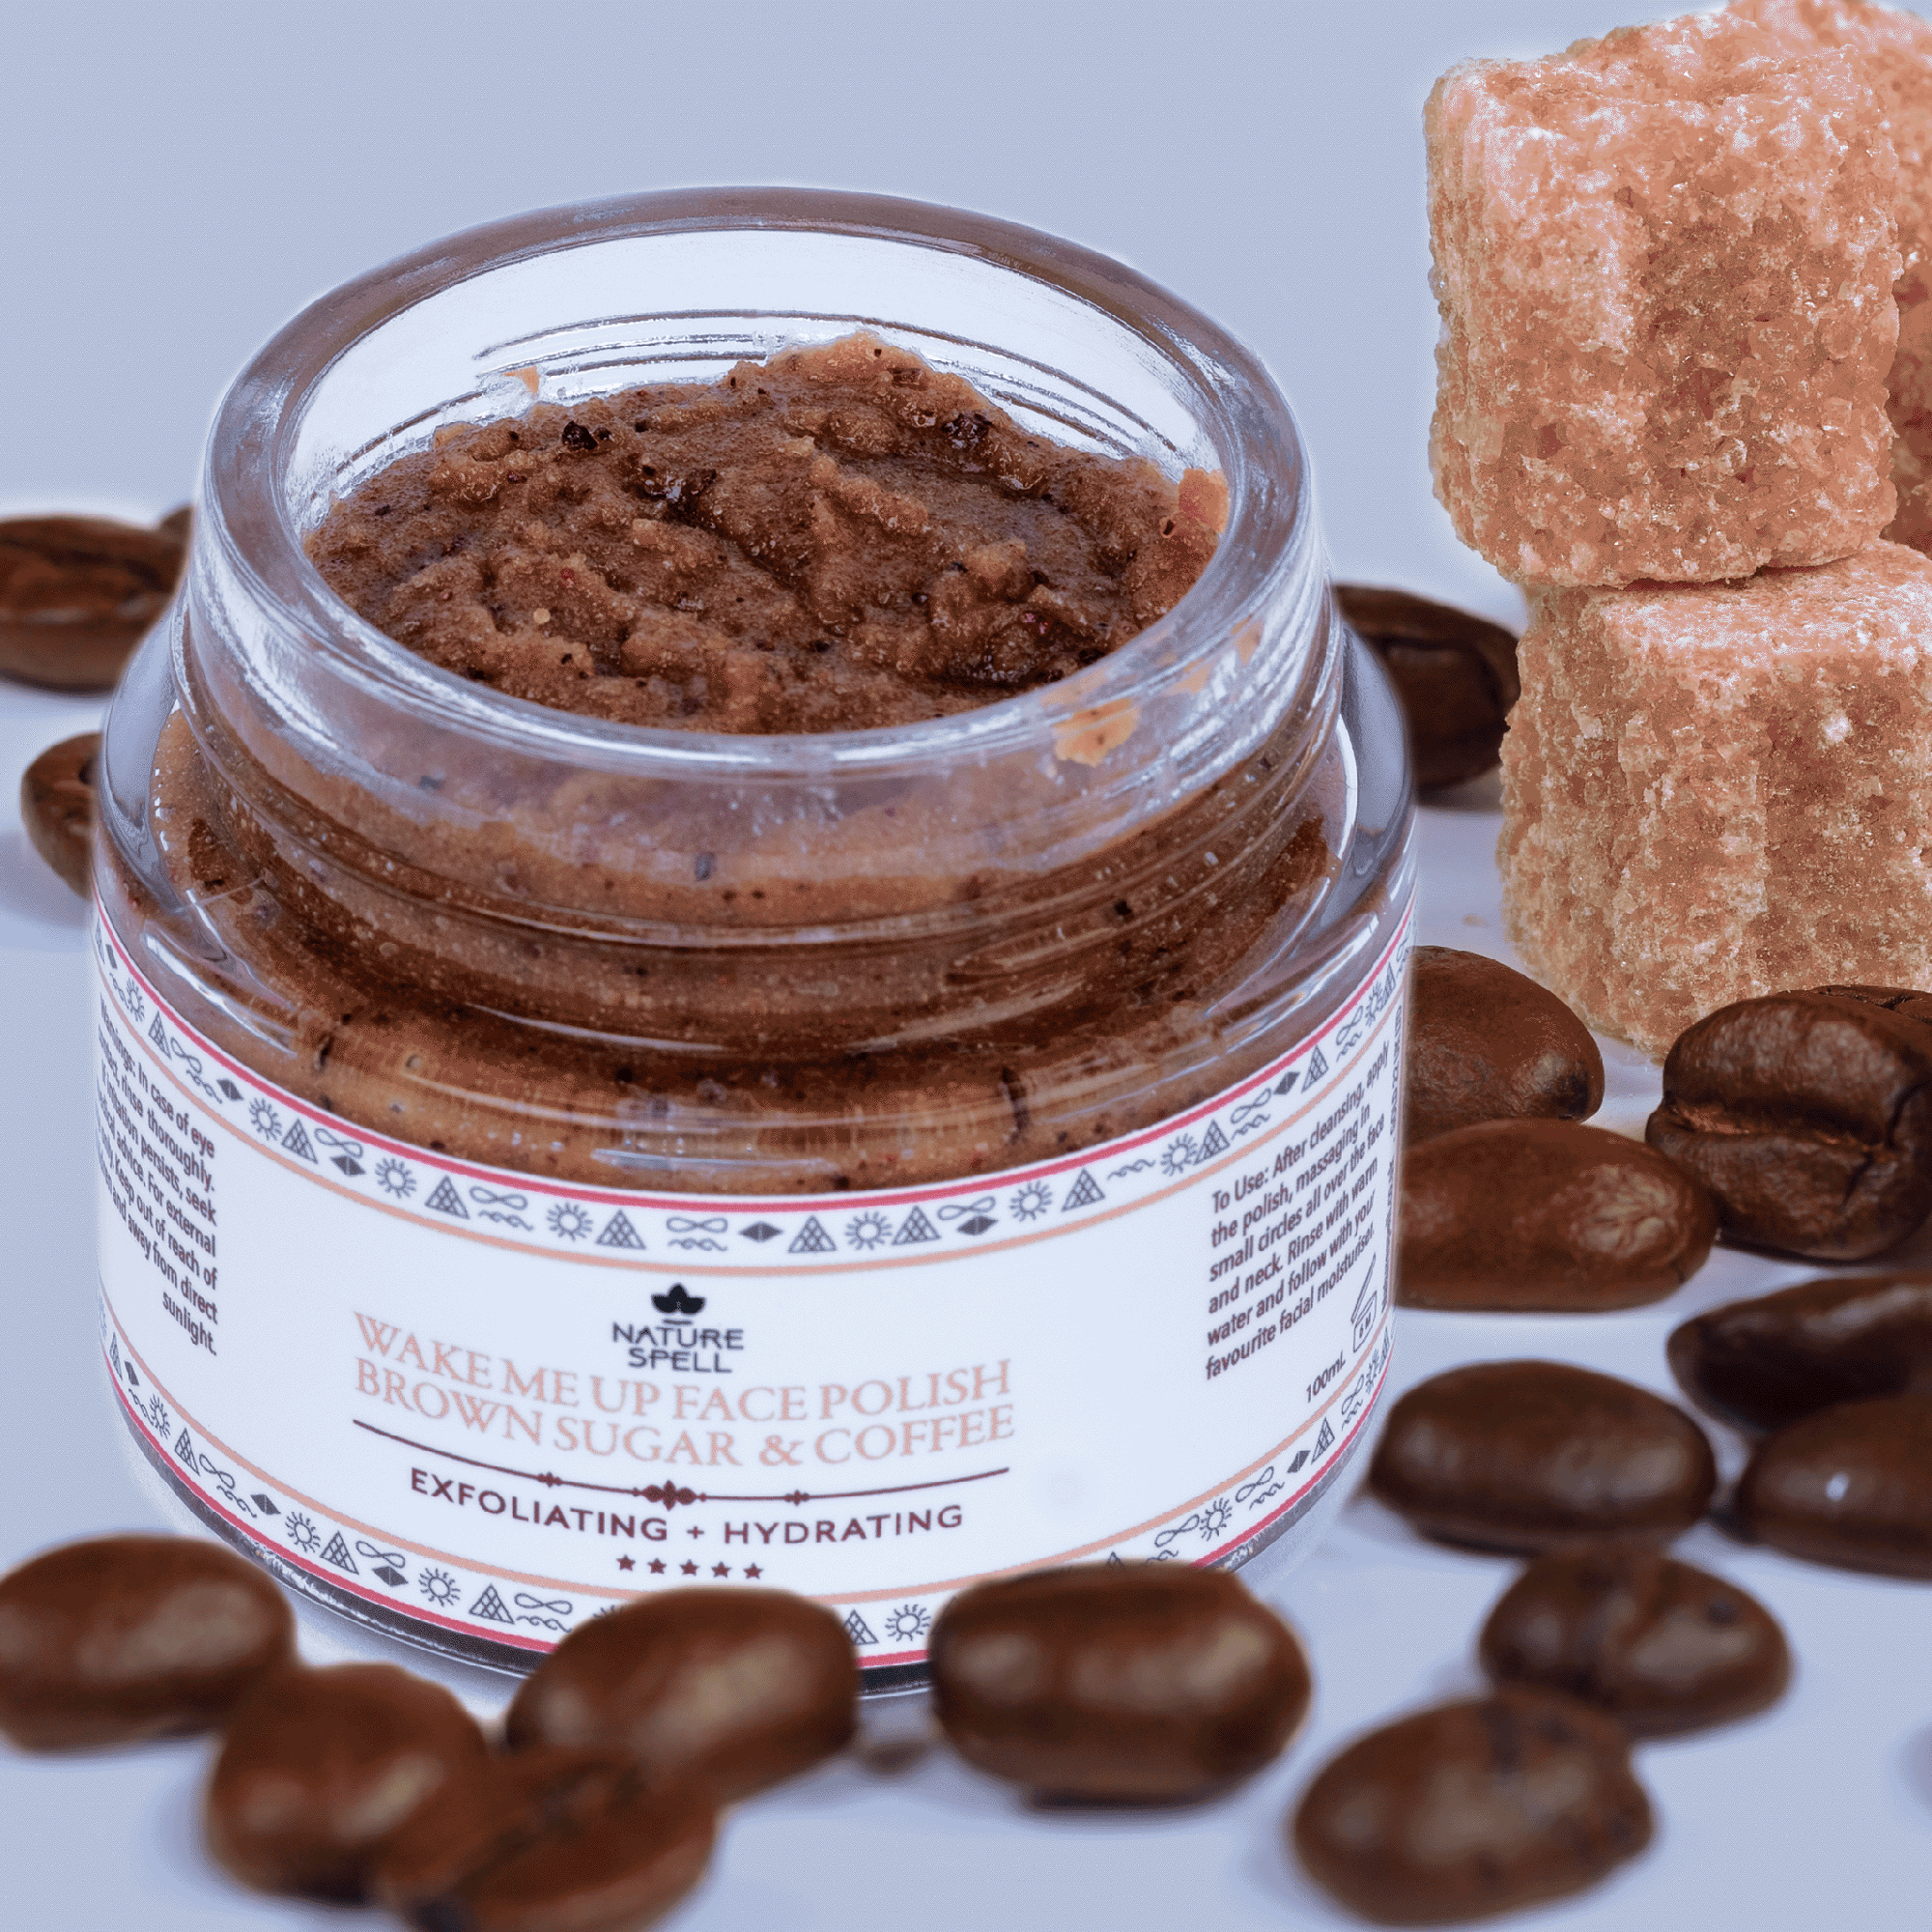 Brown Sugar & Coffee Face Scrub